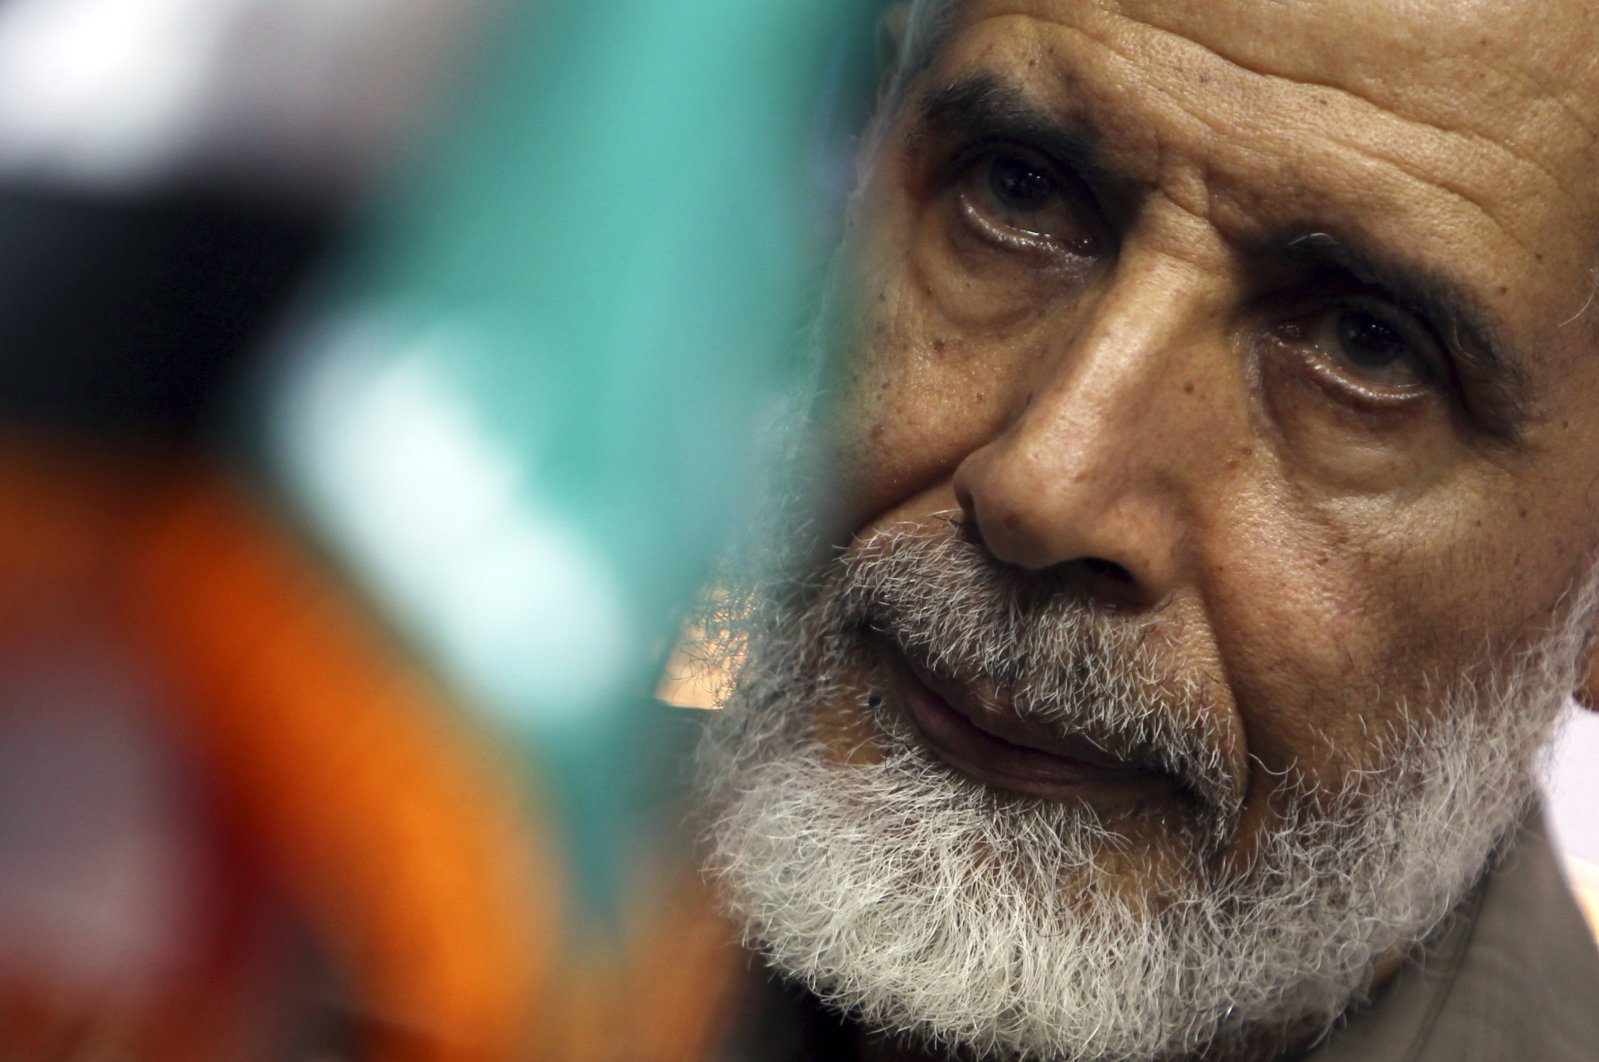 Pemimpin Ikhwanul Muslimin Ezzat dijatuhi hukuman penjara seumur hidup